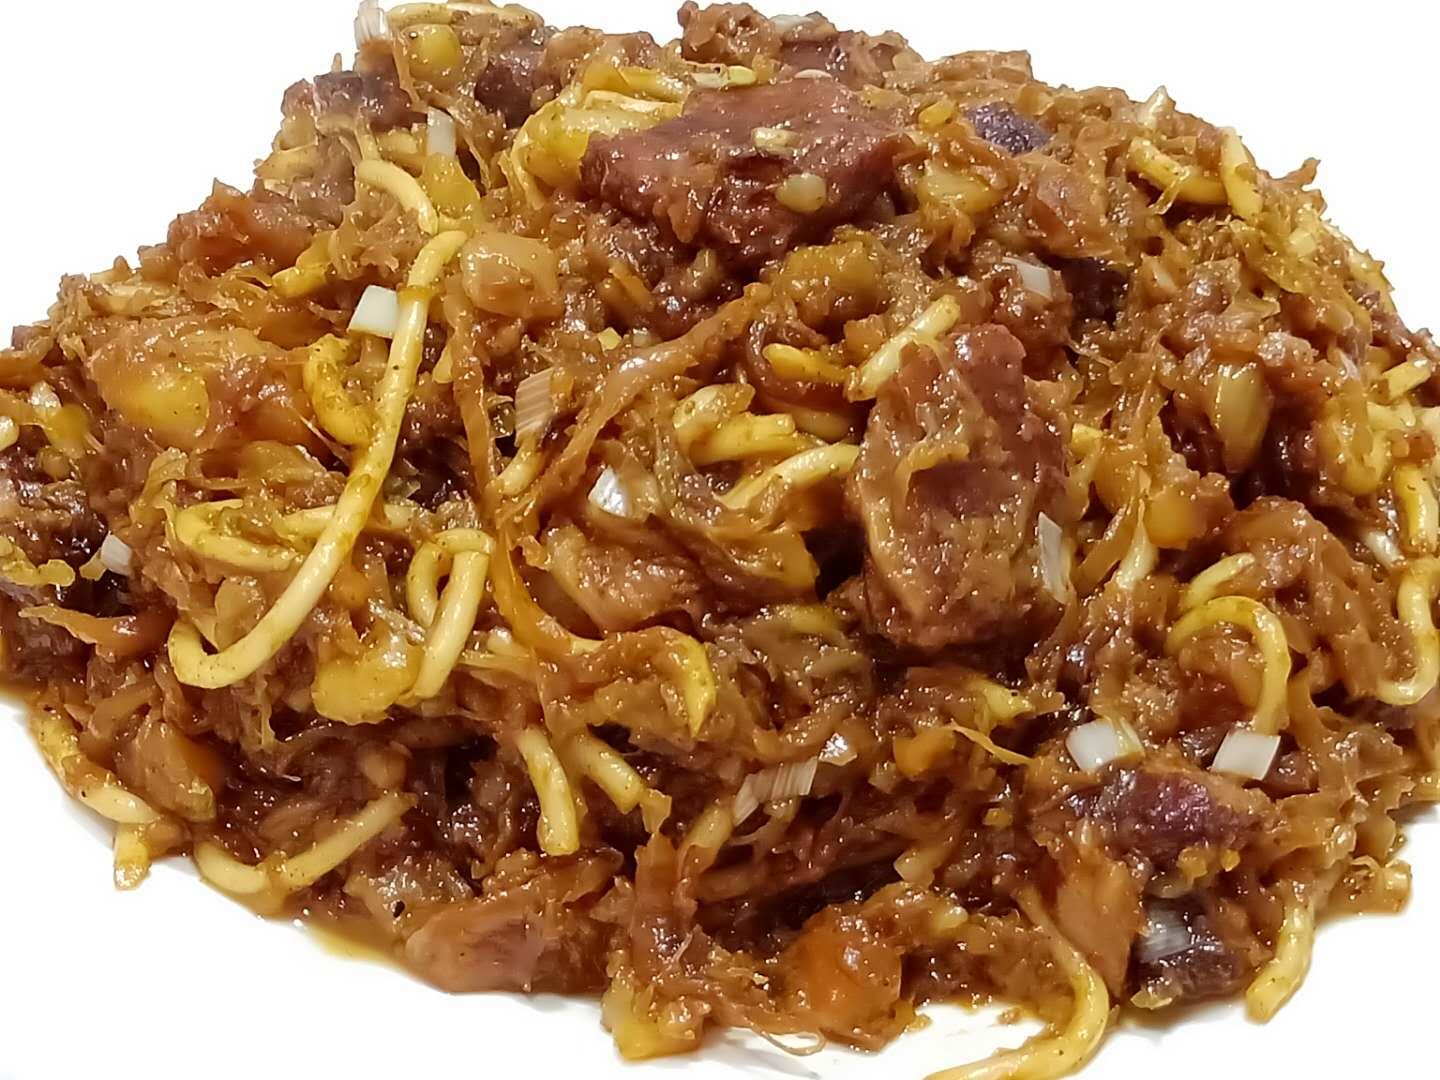 内蒙古"巴盟特色"烩酸菜,不一样的酸菜做法,独特香味远近闻名